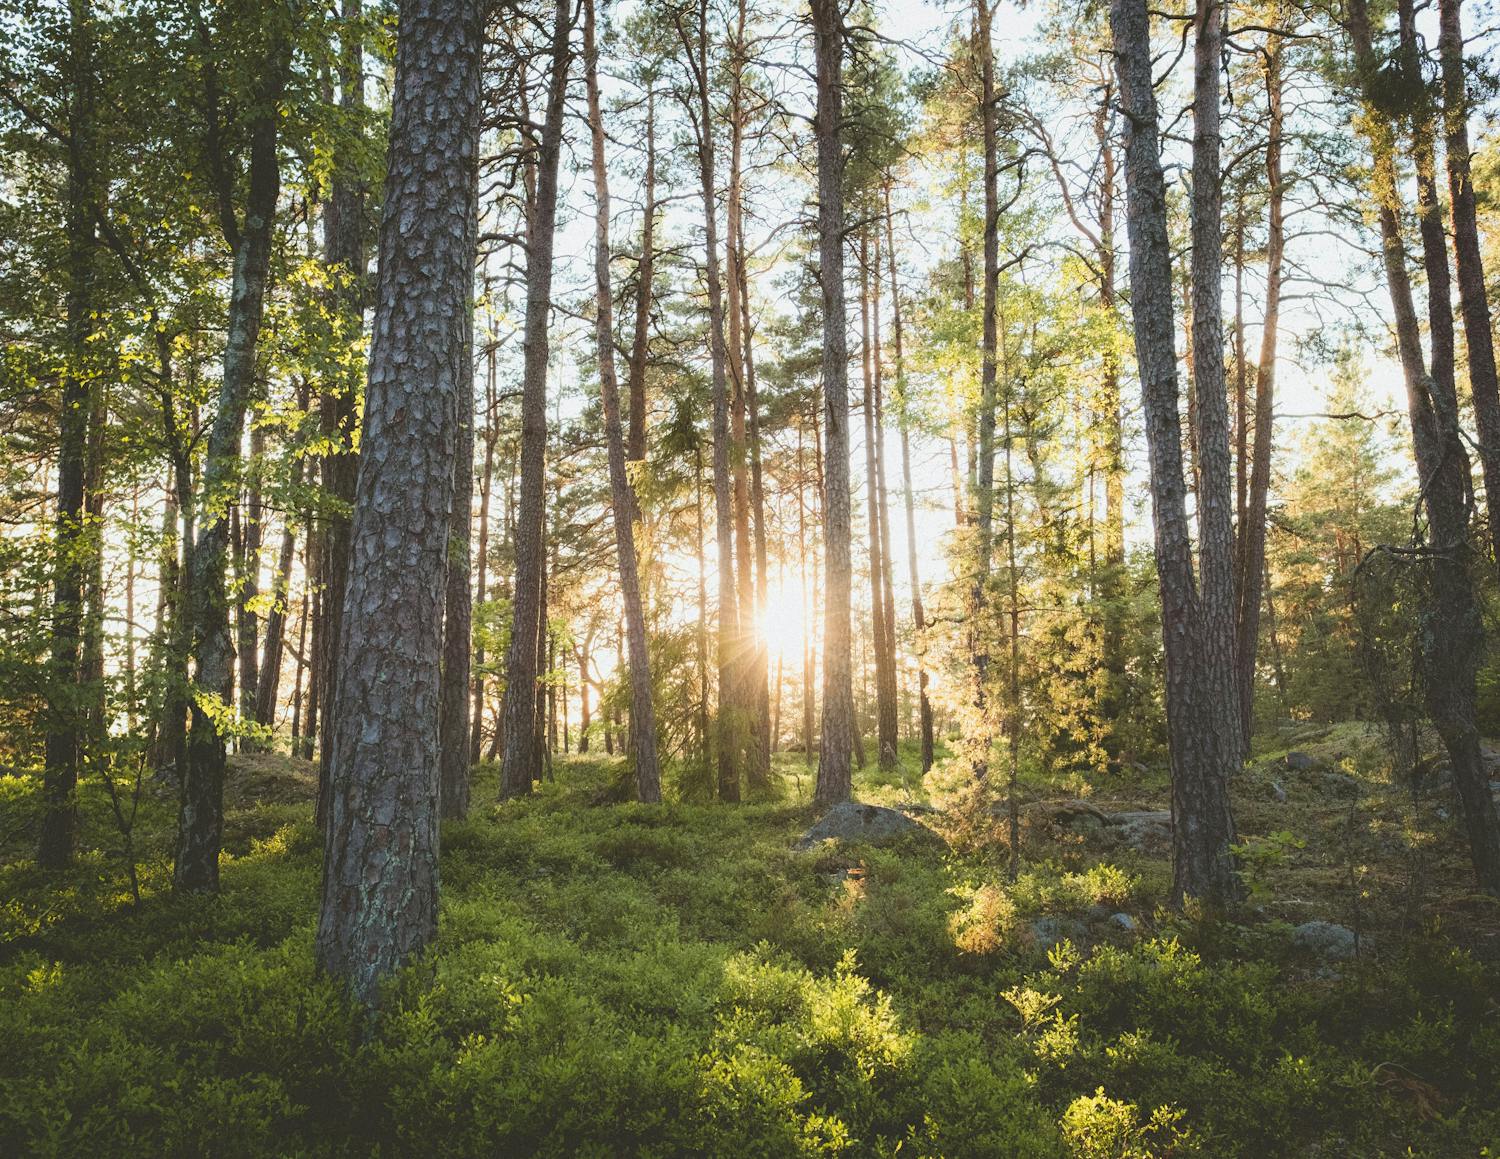 La foresta svedese: una soluzione alla crisi climatica o una vergogna per l’ecosistema?